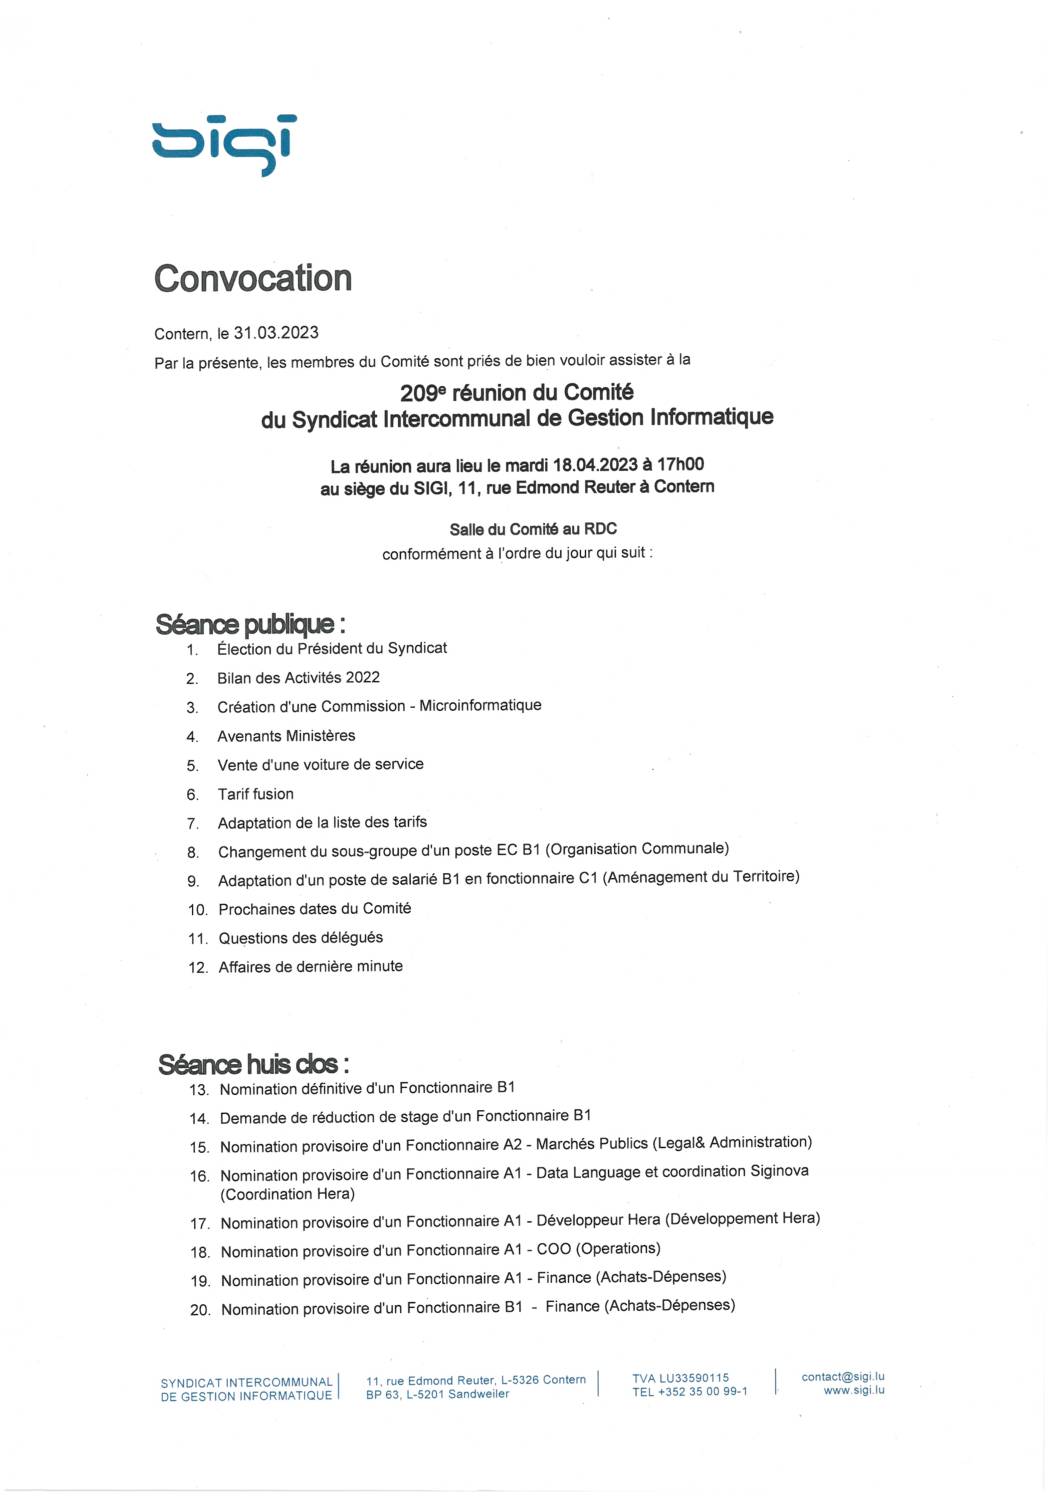 2023.04.05_Convocation comité SIGI - Réunion du 18.04.2023